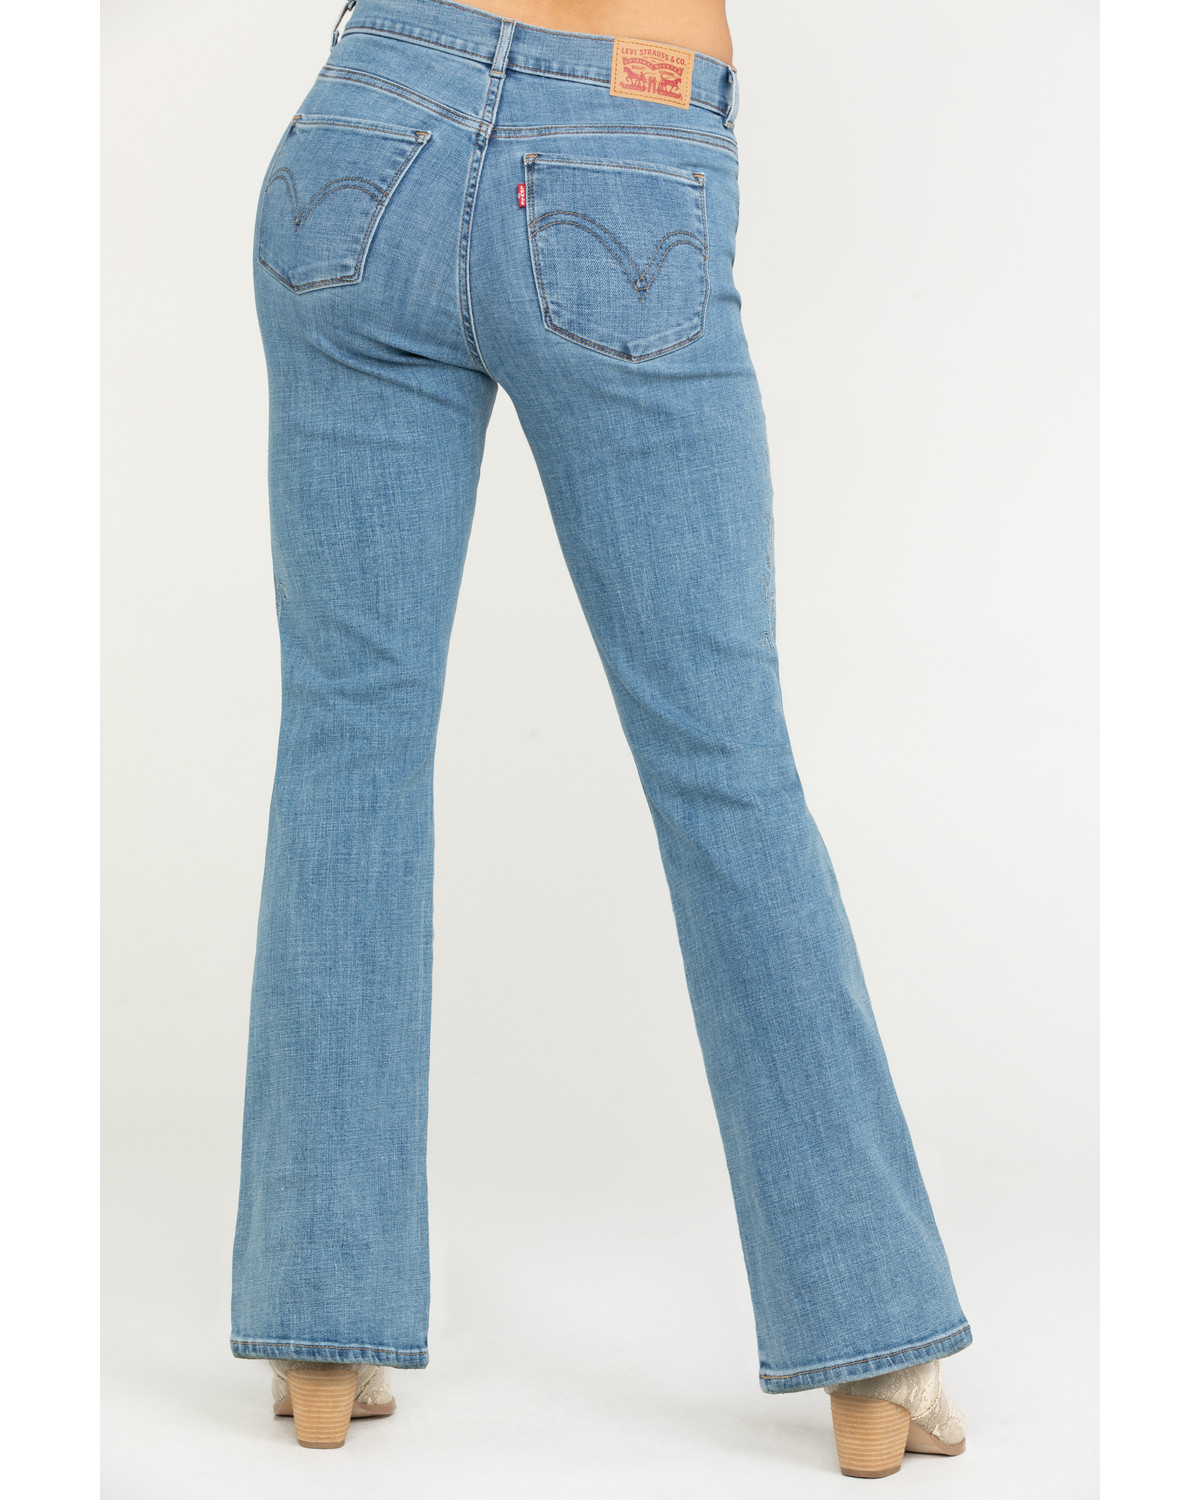 levis bootleg jeans Cheaper Than Retail 